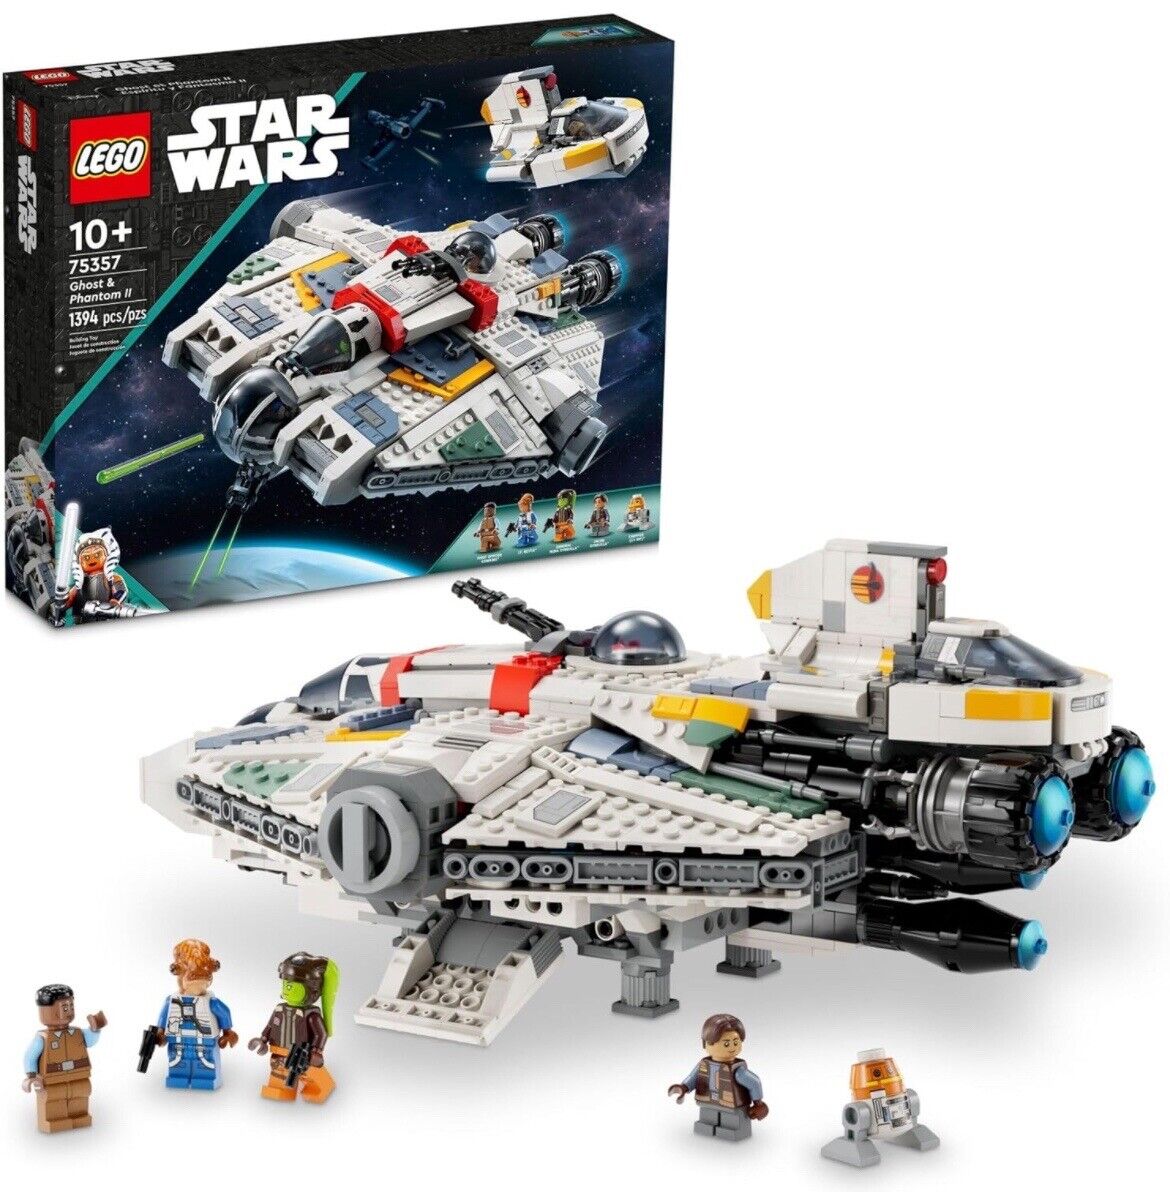 Lego Star Wars #75357 Ghost & Phantom II - New & Sealed in Original Lego Box